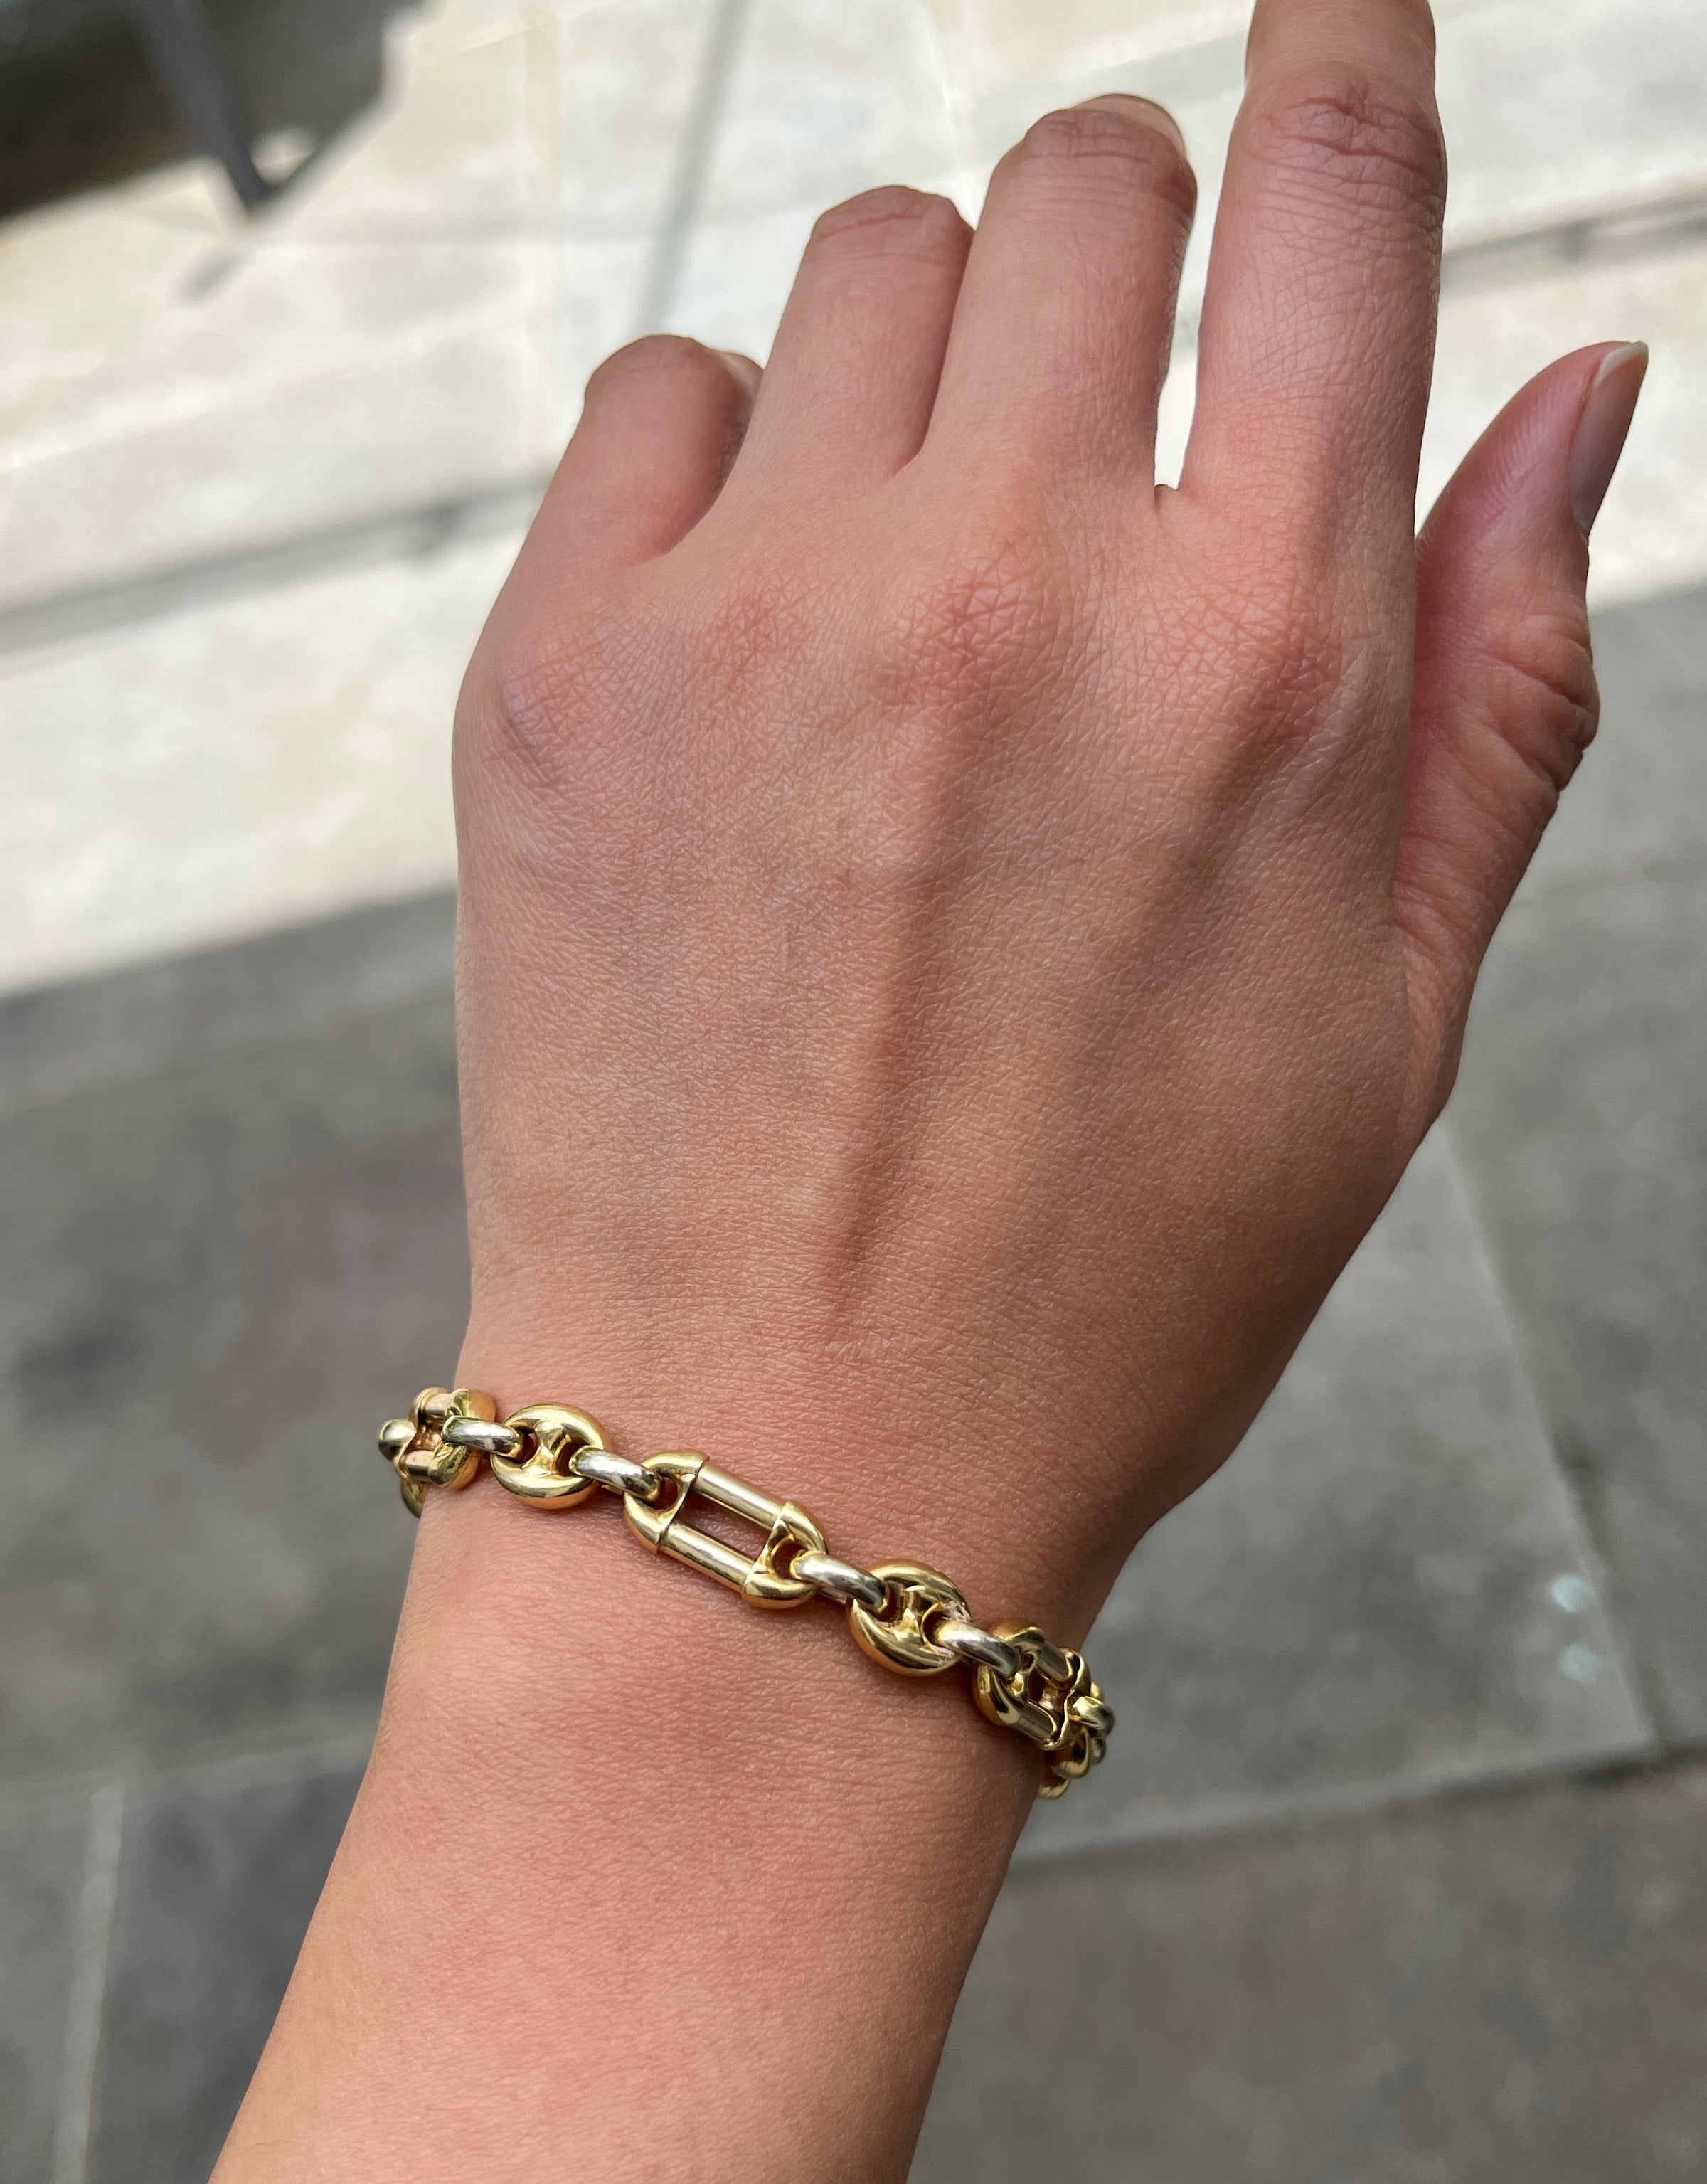 Cartier Paris Jewelry 18K Gold Anchor Link Chain Bracelet